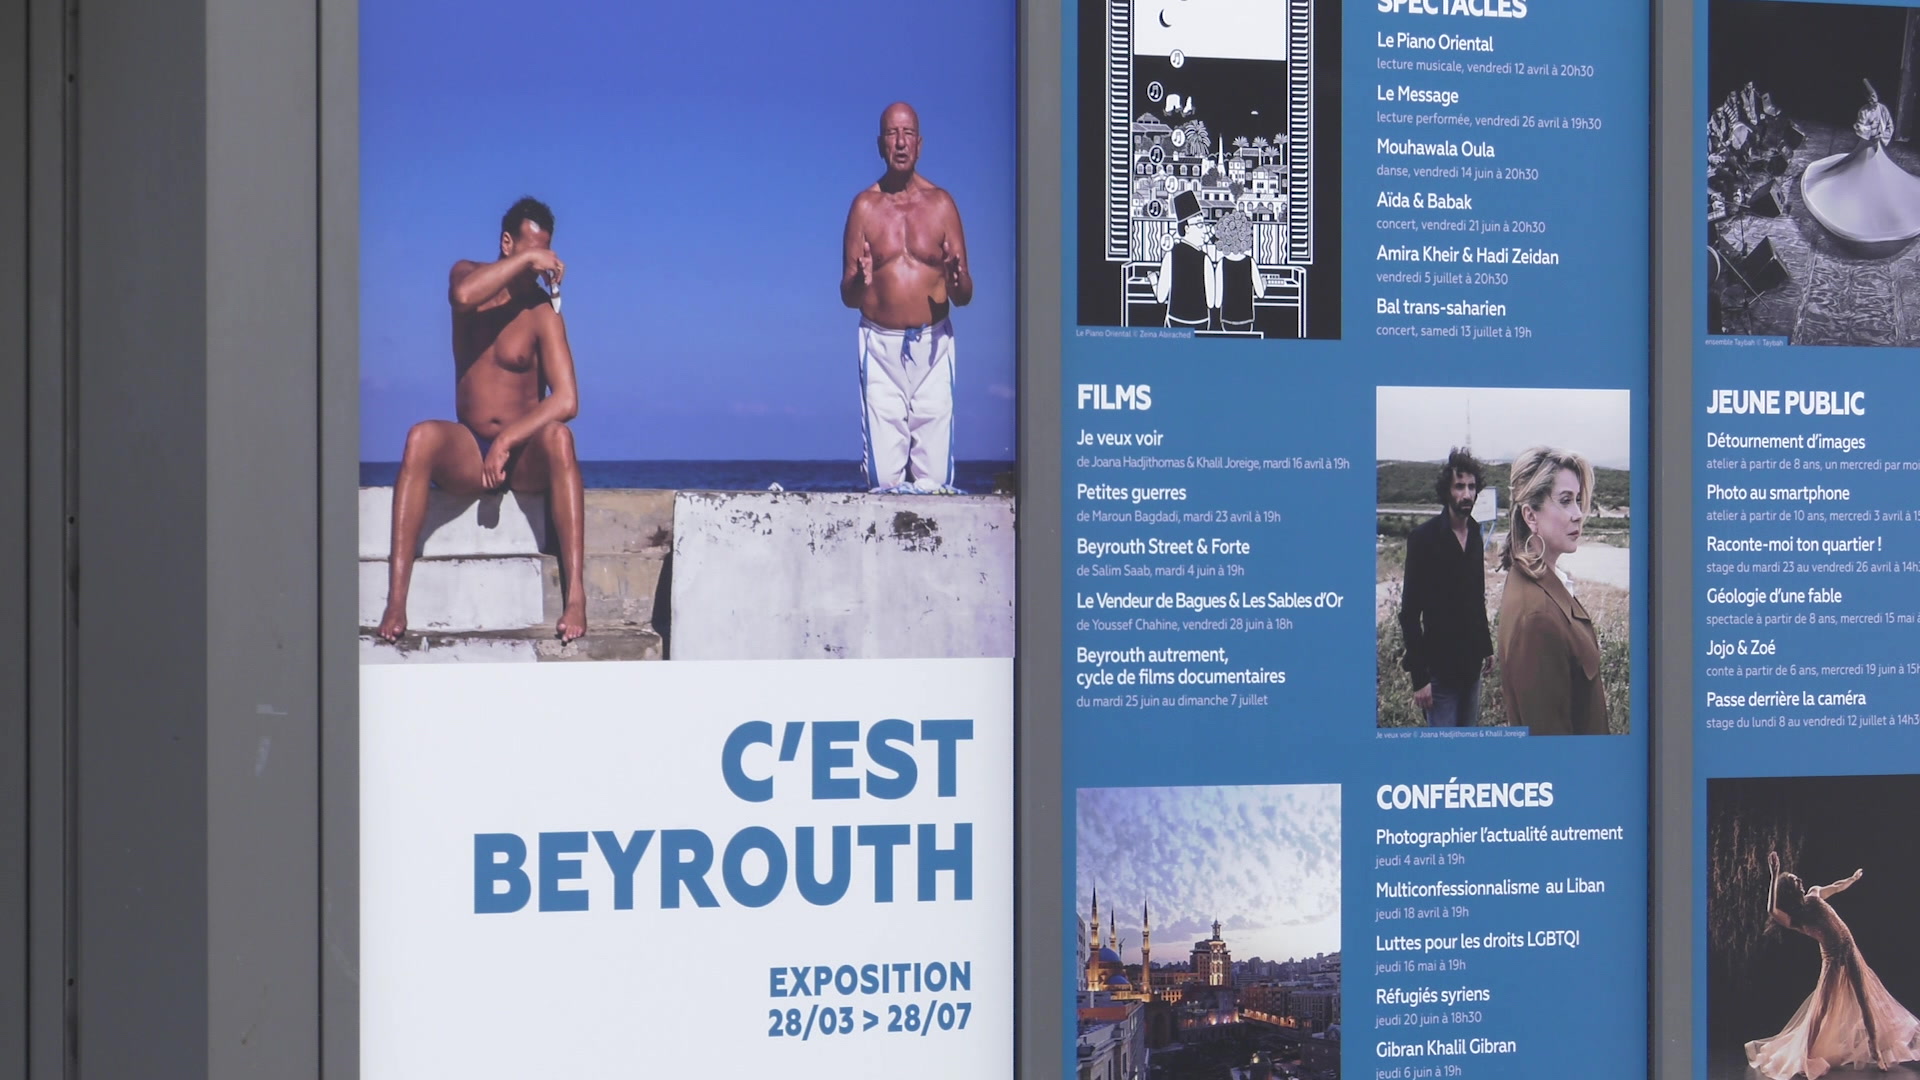 Exposition "C'est Beyrouth" à l'Institut des Cultures d'Islam à Paris